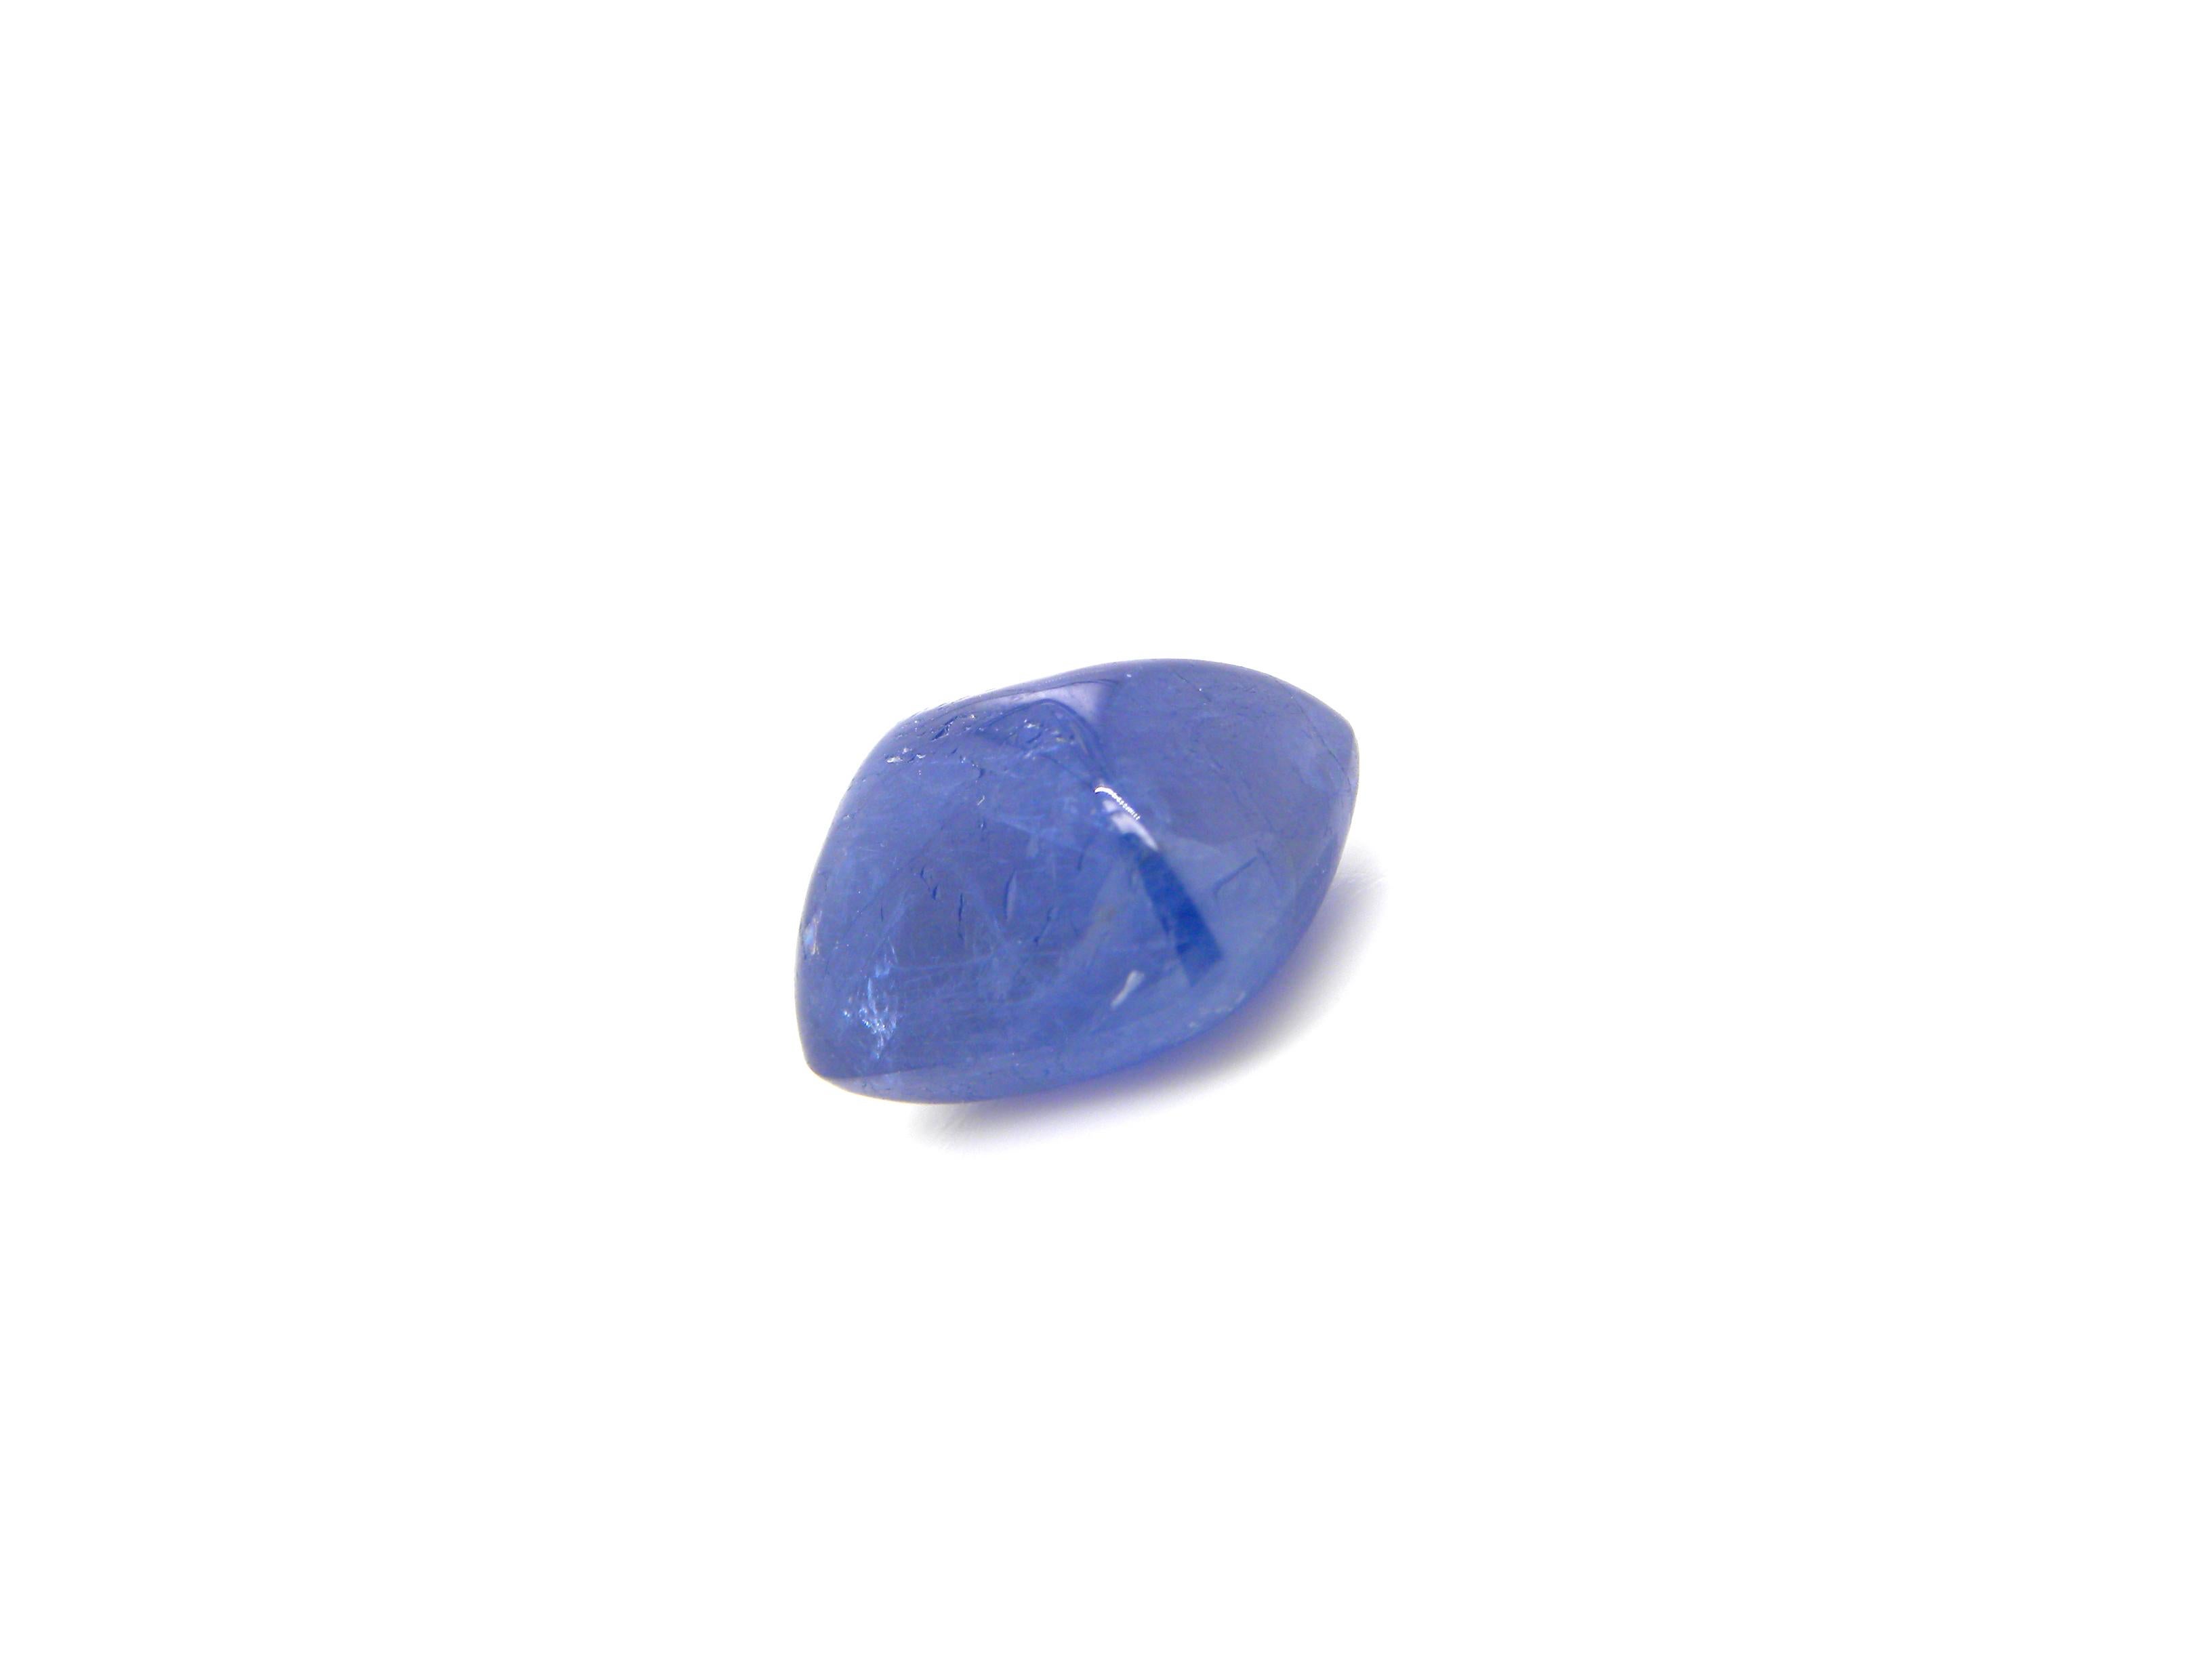 Sugarloaf Cabochon 7.74 Carat Sugarloaf-Cut Unheated Burmese Blue Sapphire